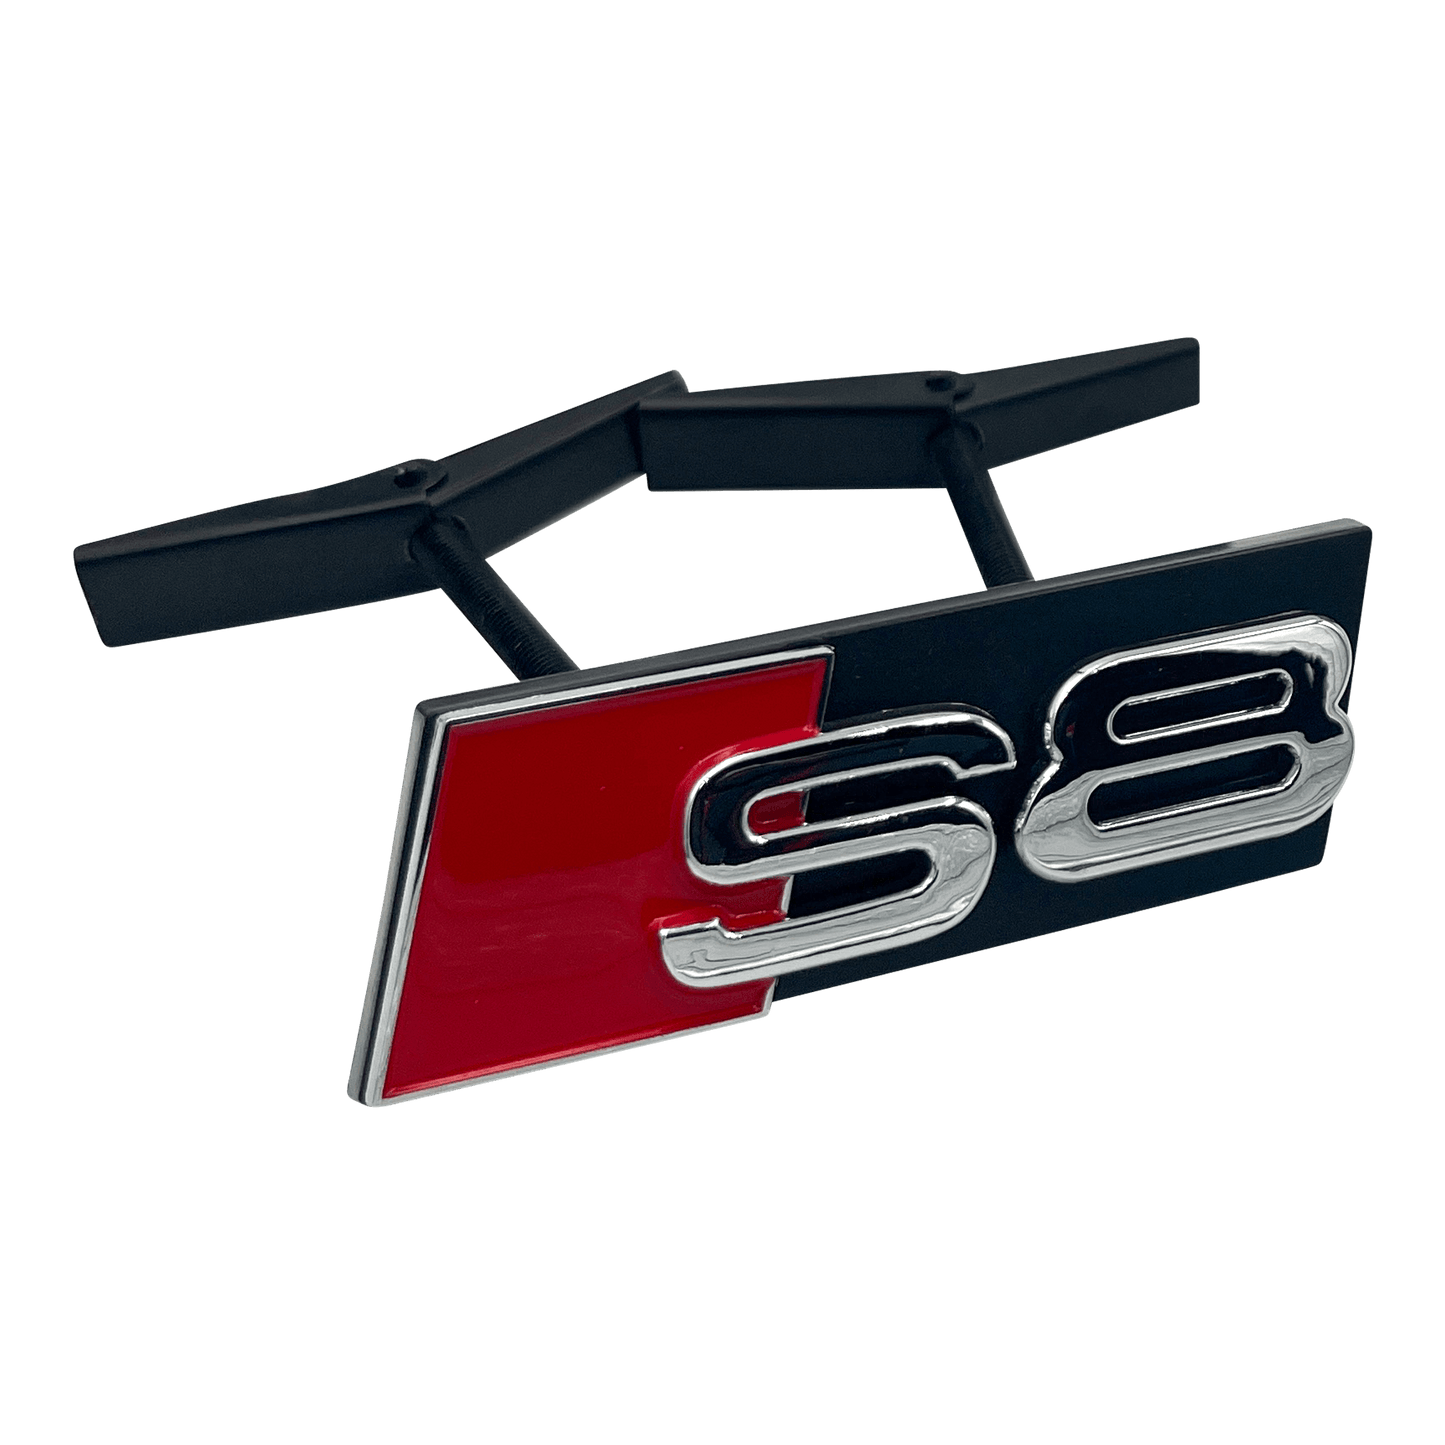 Chrome Audi S8 Front Emblem Badge 